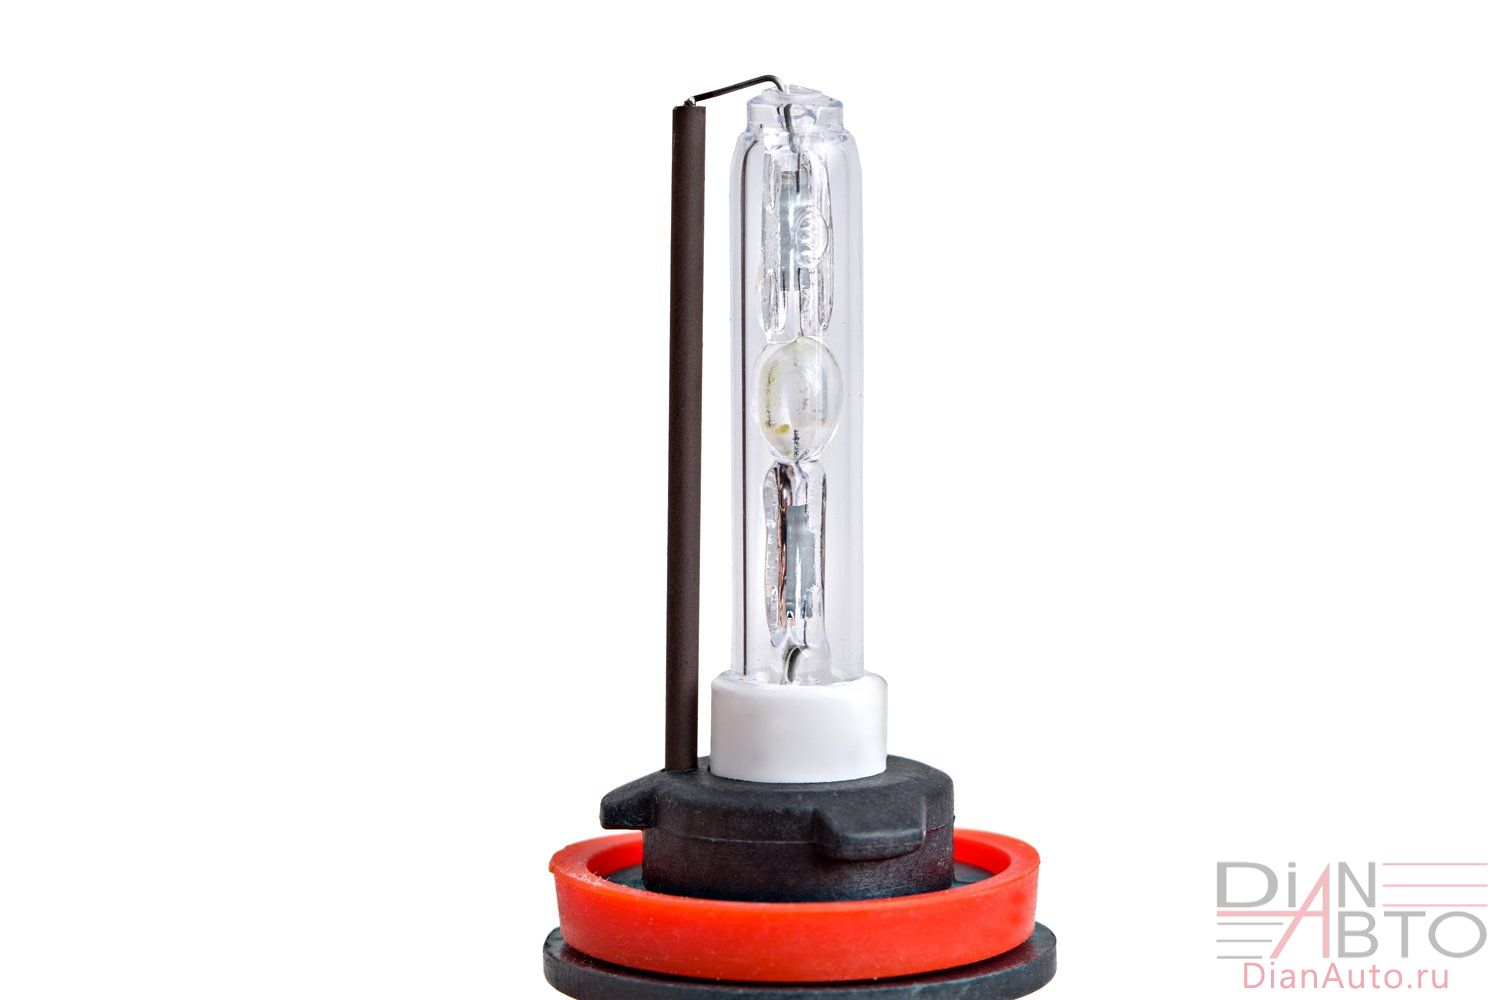 Ксеноновая лампа Optima Premium H11 с керамическим основанием колбы